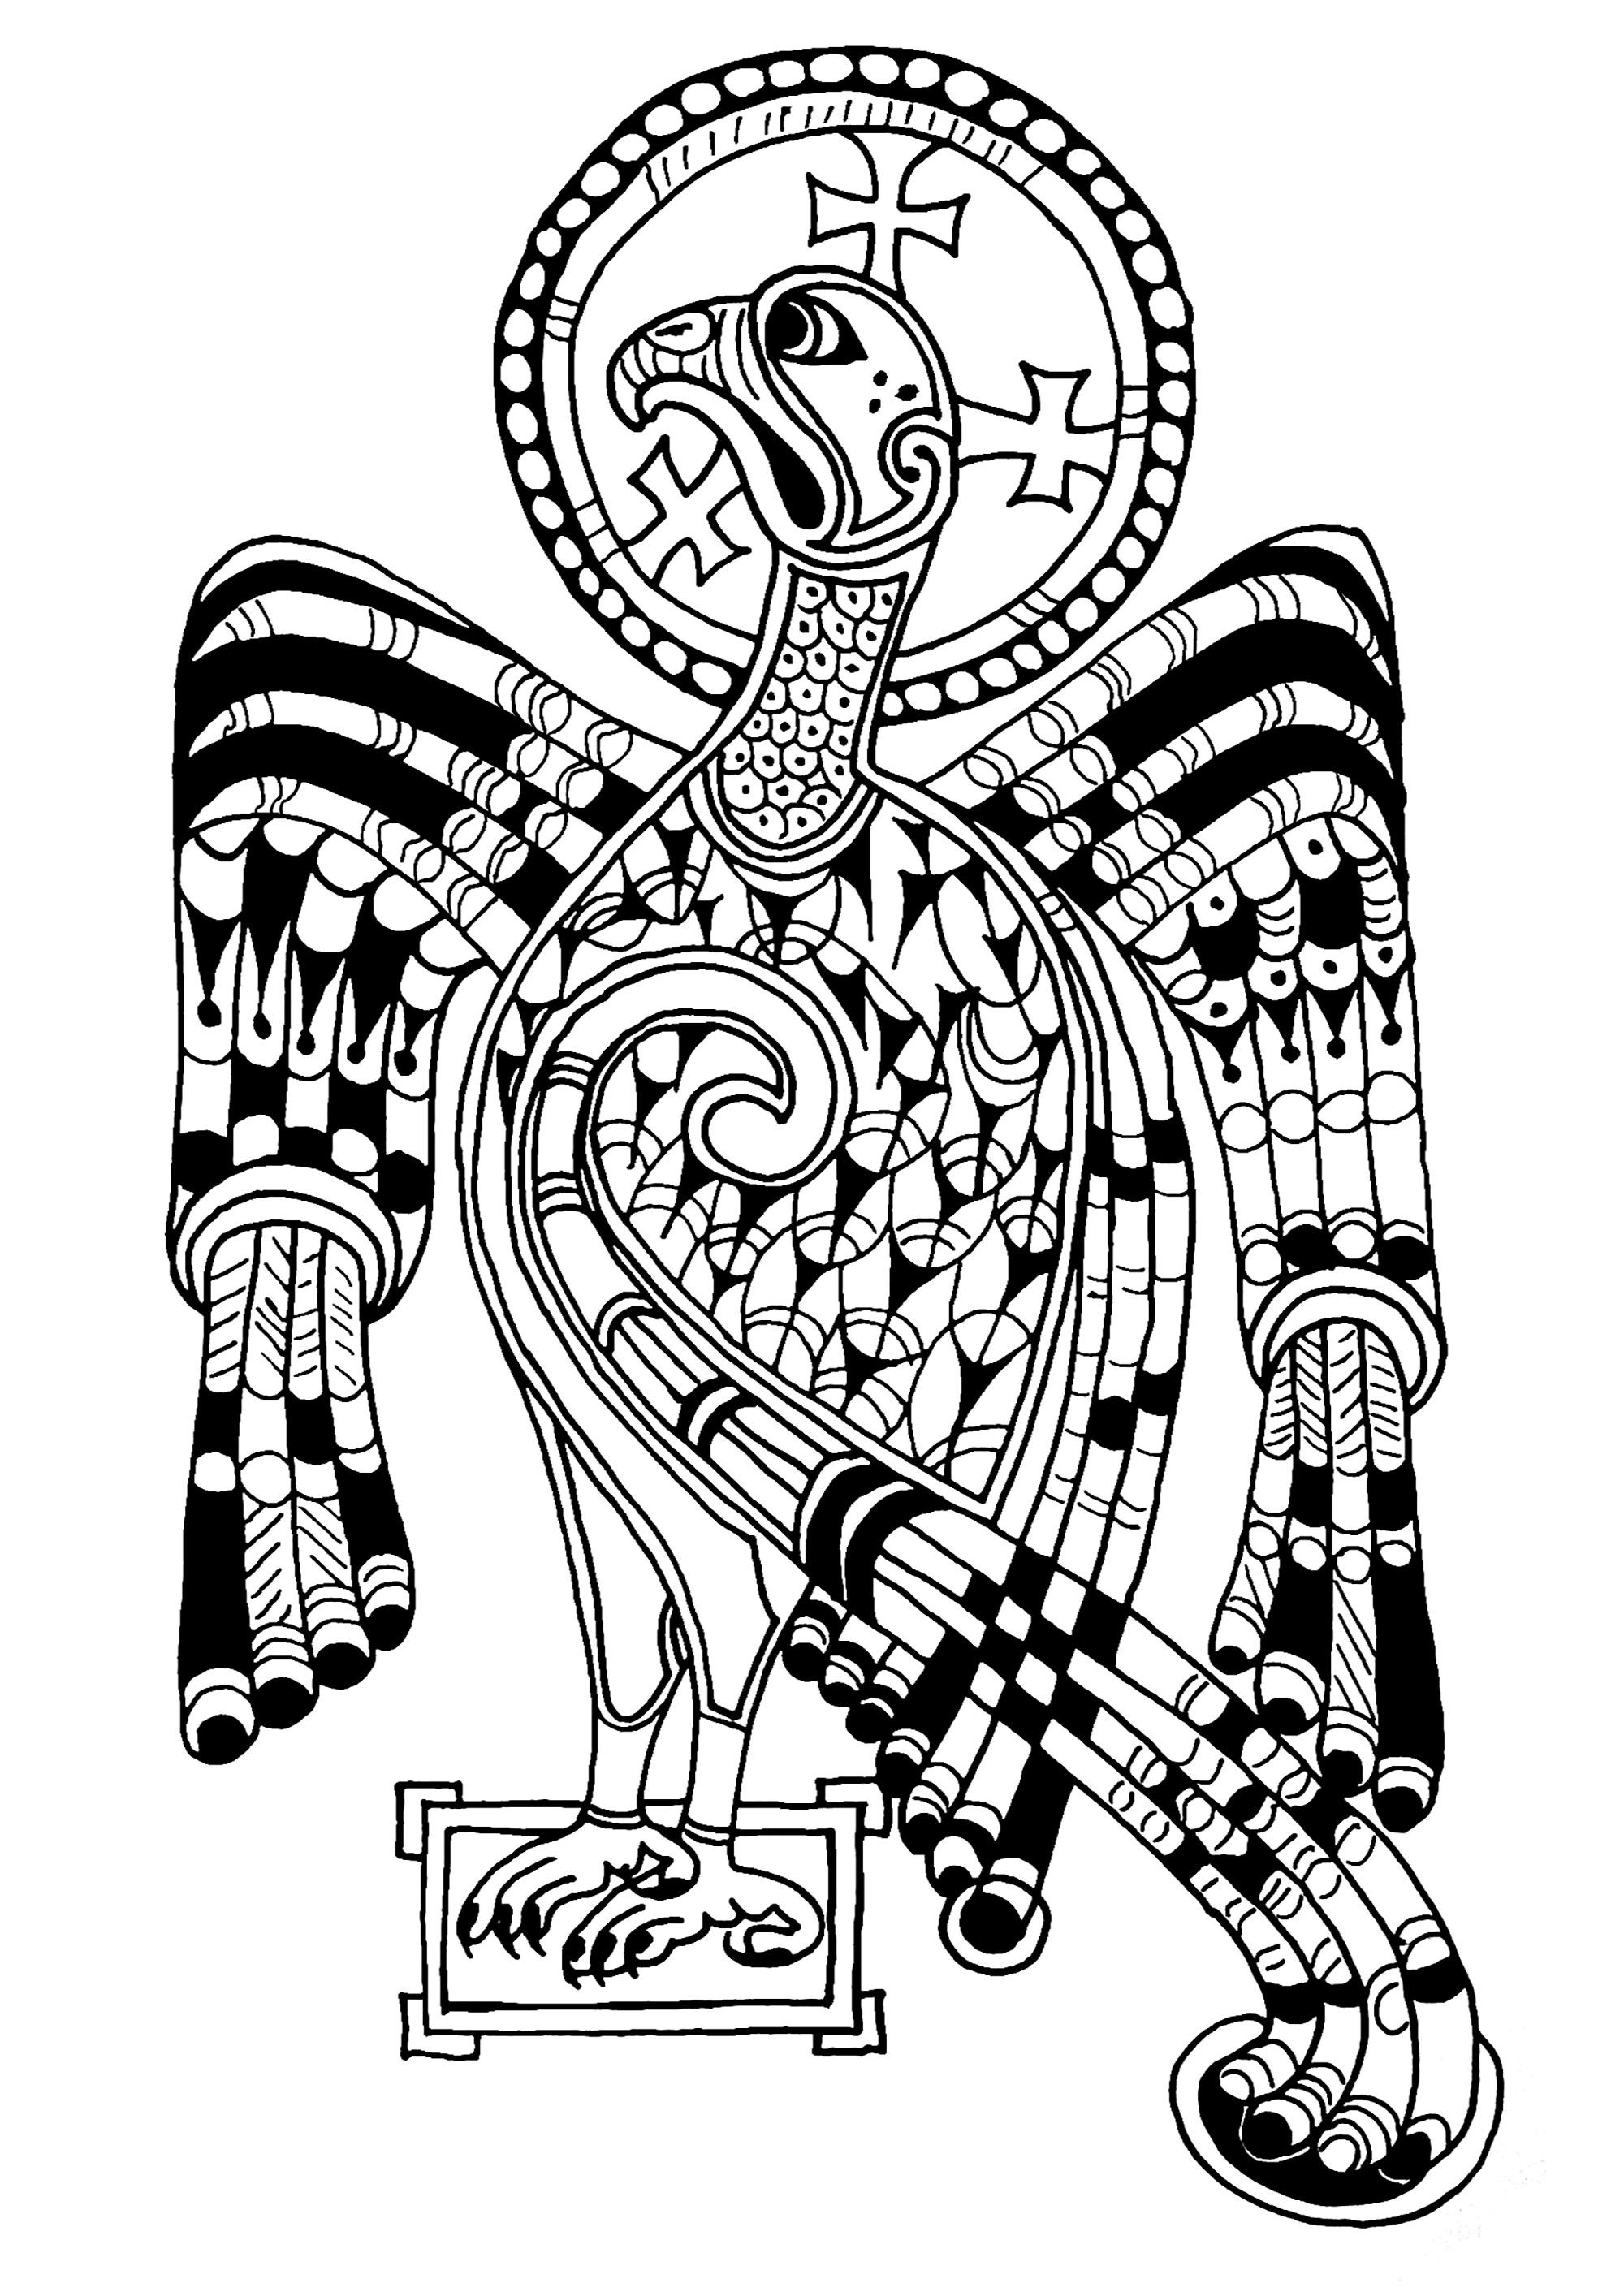 Águia representada no Livro de Kells, simbolizando São João e a ascensão de Jesus. O Livro de Kells é um manuscrito medieval datado do século IX, do qual restam 680 páginas. Contém os quatro Evangelhos latinos do Novo Testamento. Encontra-se em exposição na Biblioteca do Trinity College, em Dublin.